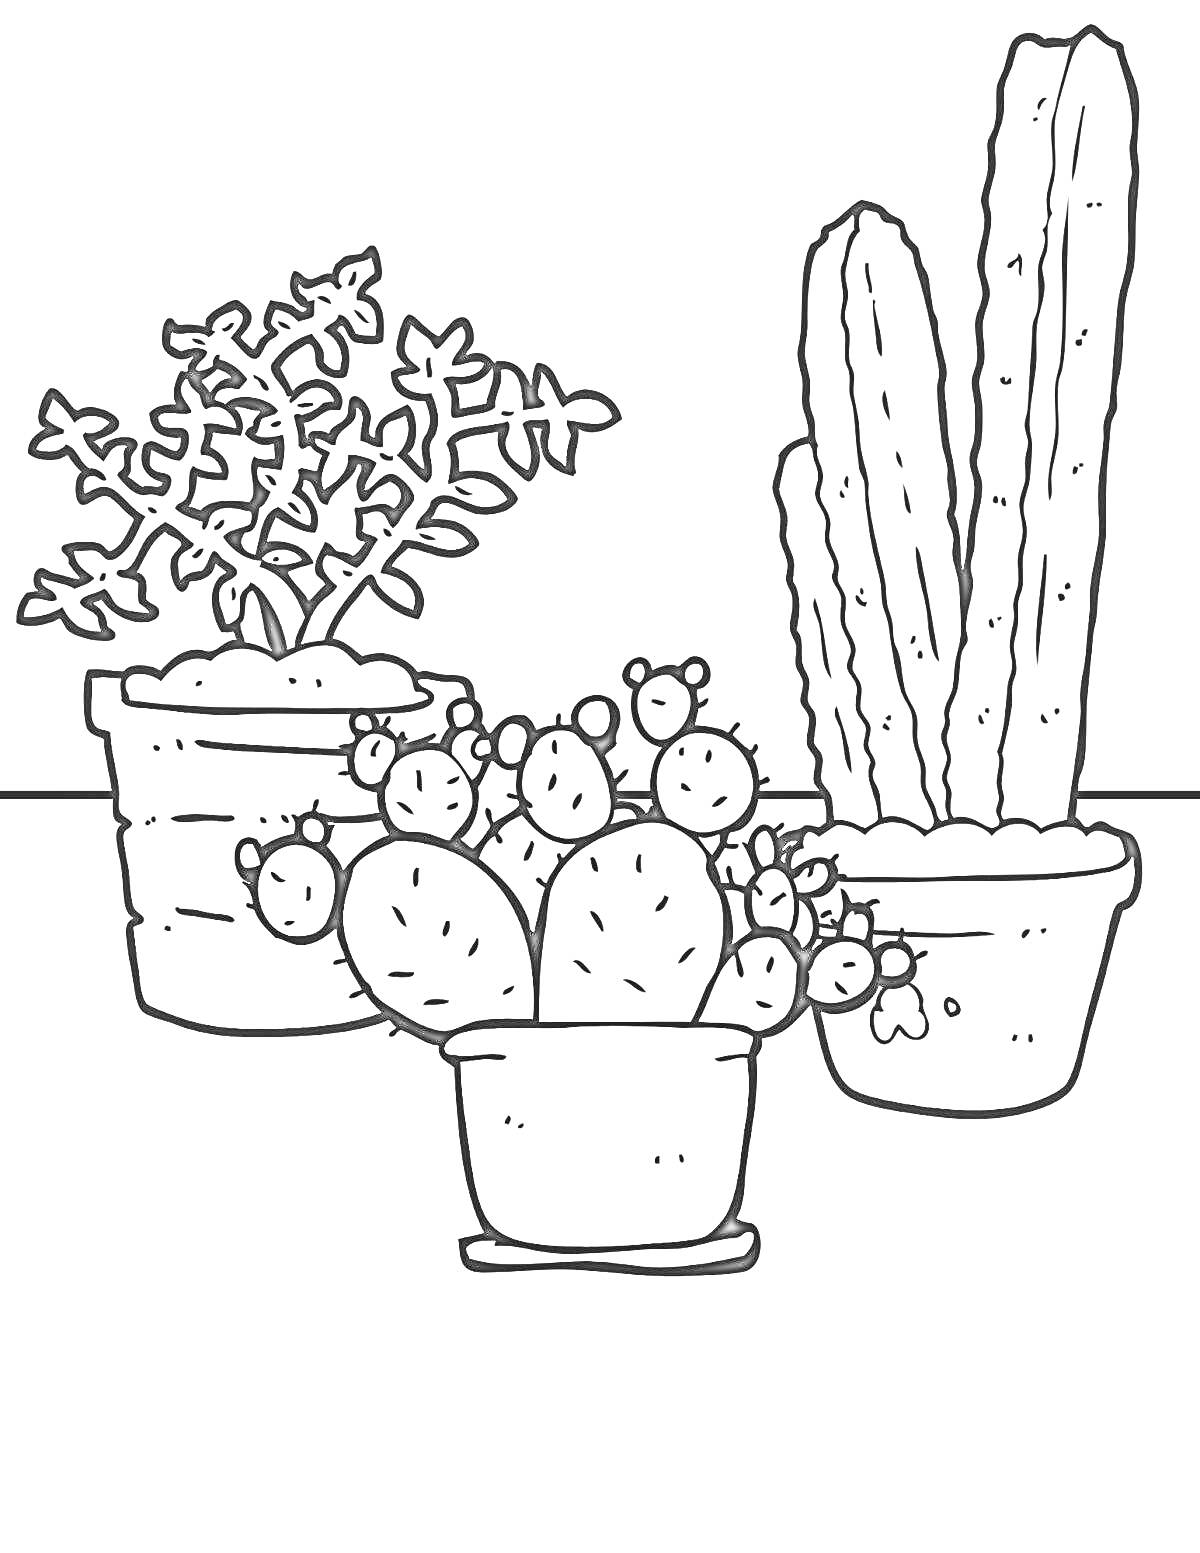 Раскраска Три горшка с комнатными растениями (кактусы и суккулент)